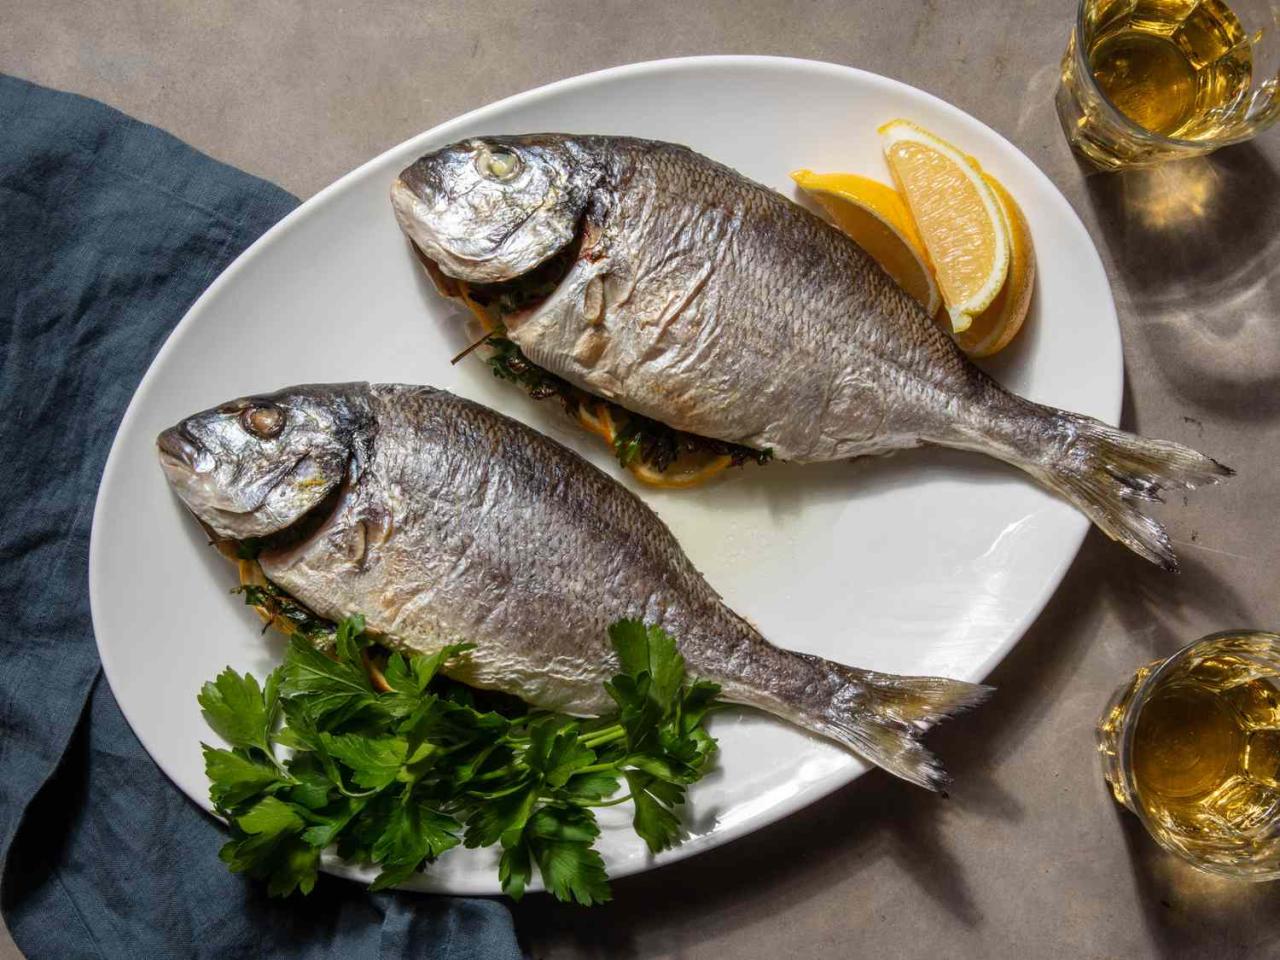 Whole Roasted Fish With Oregano, Parsley, And Lemon Recipe